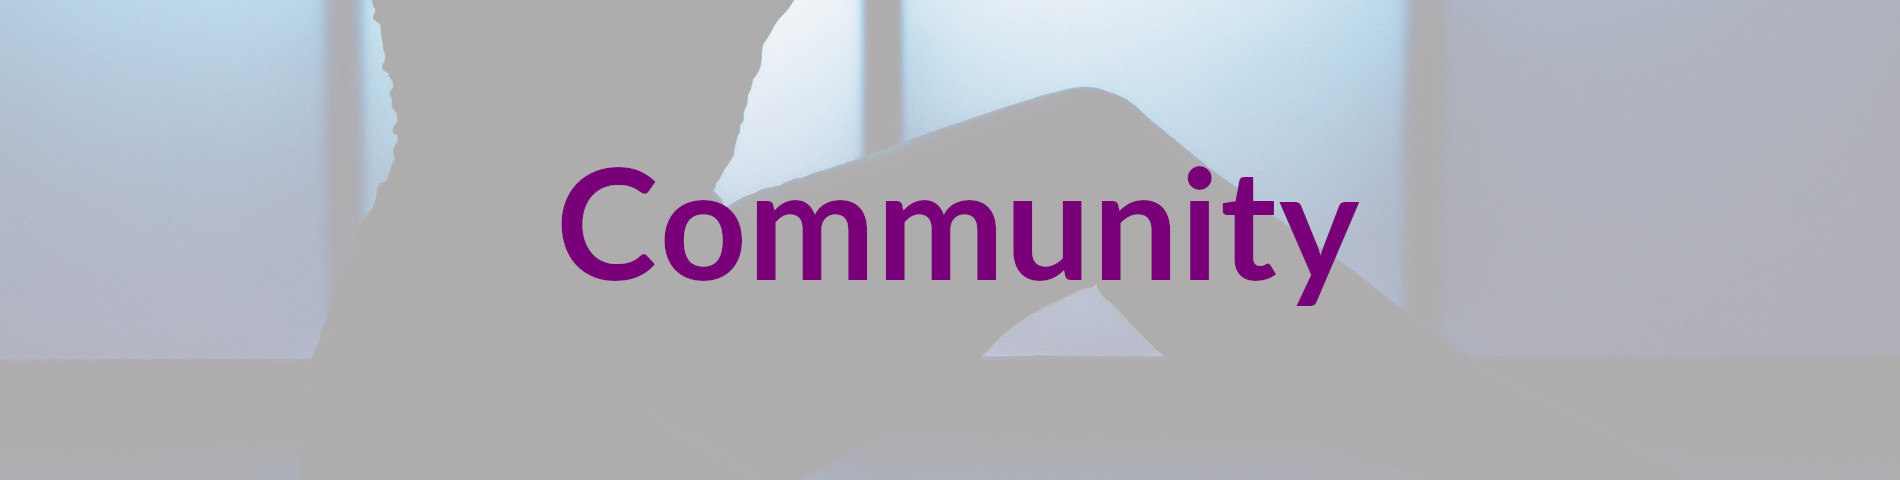 Header_Community-2